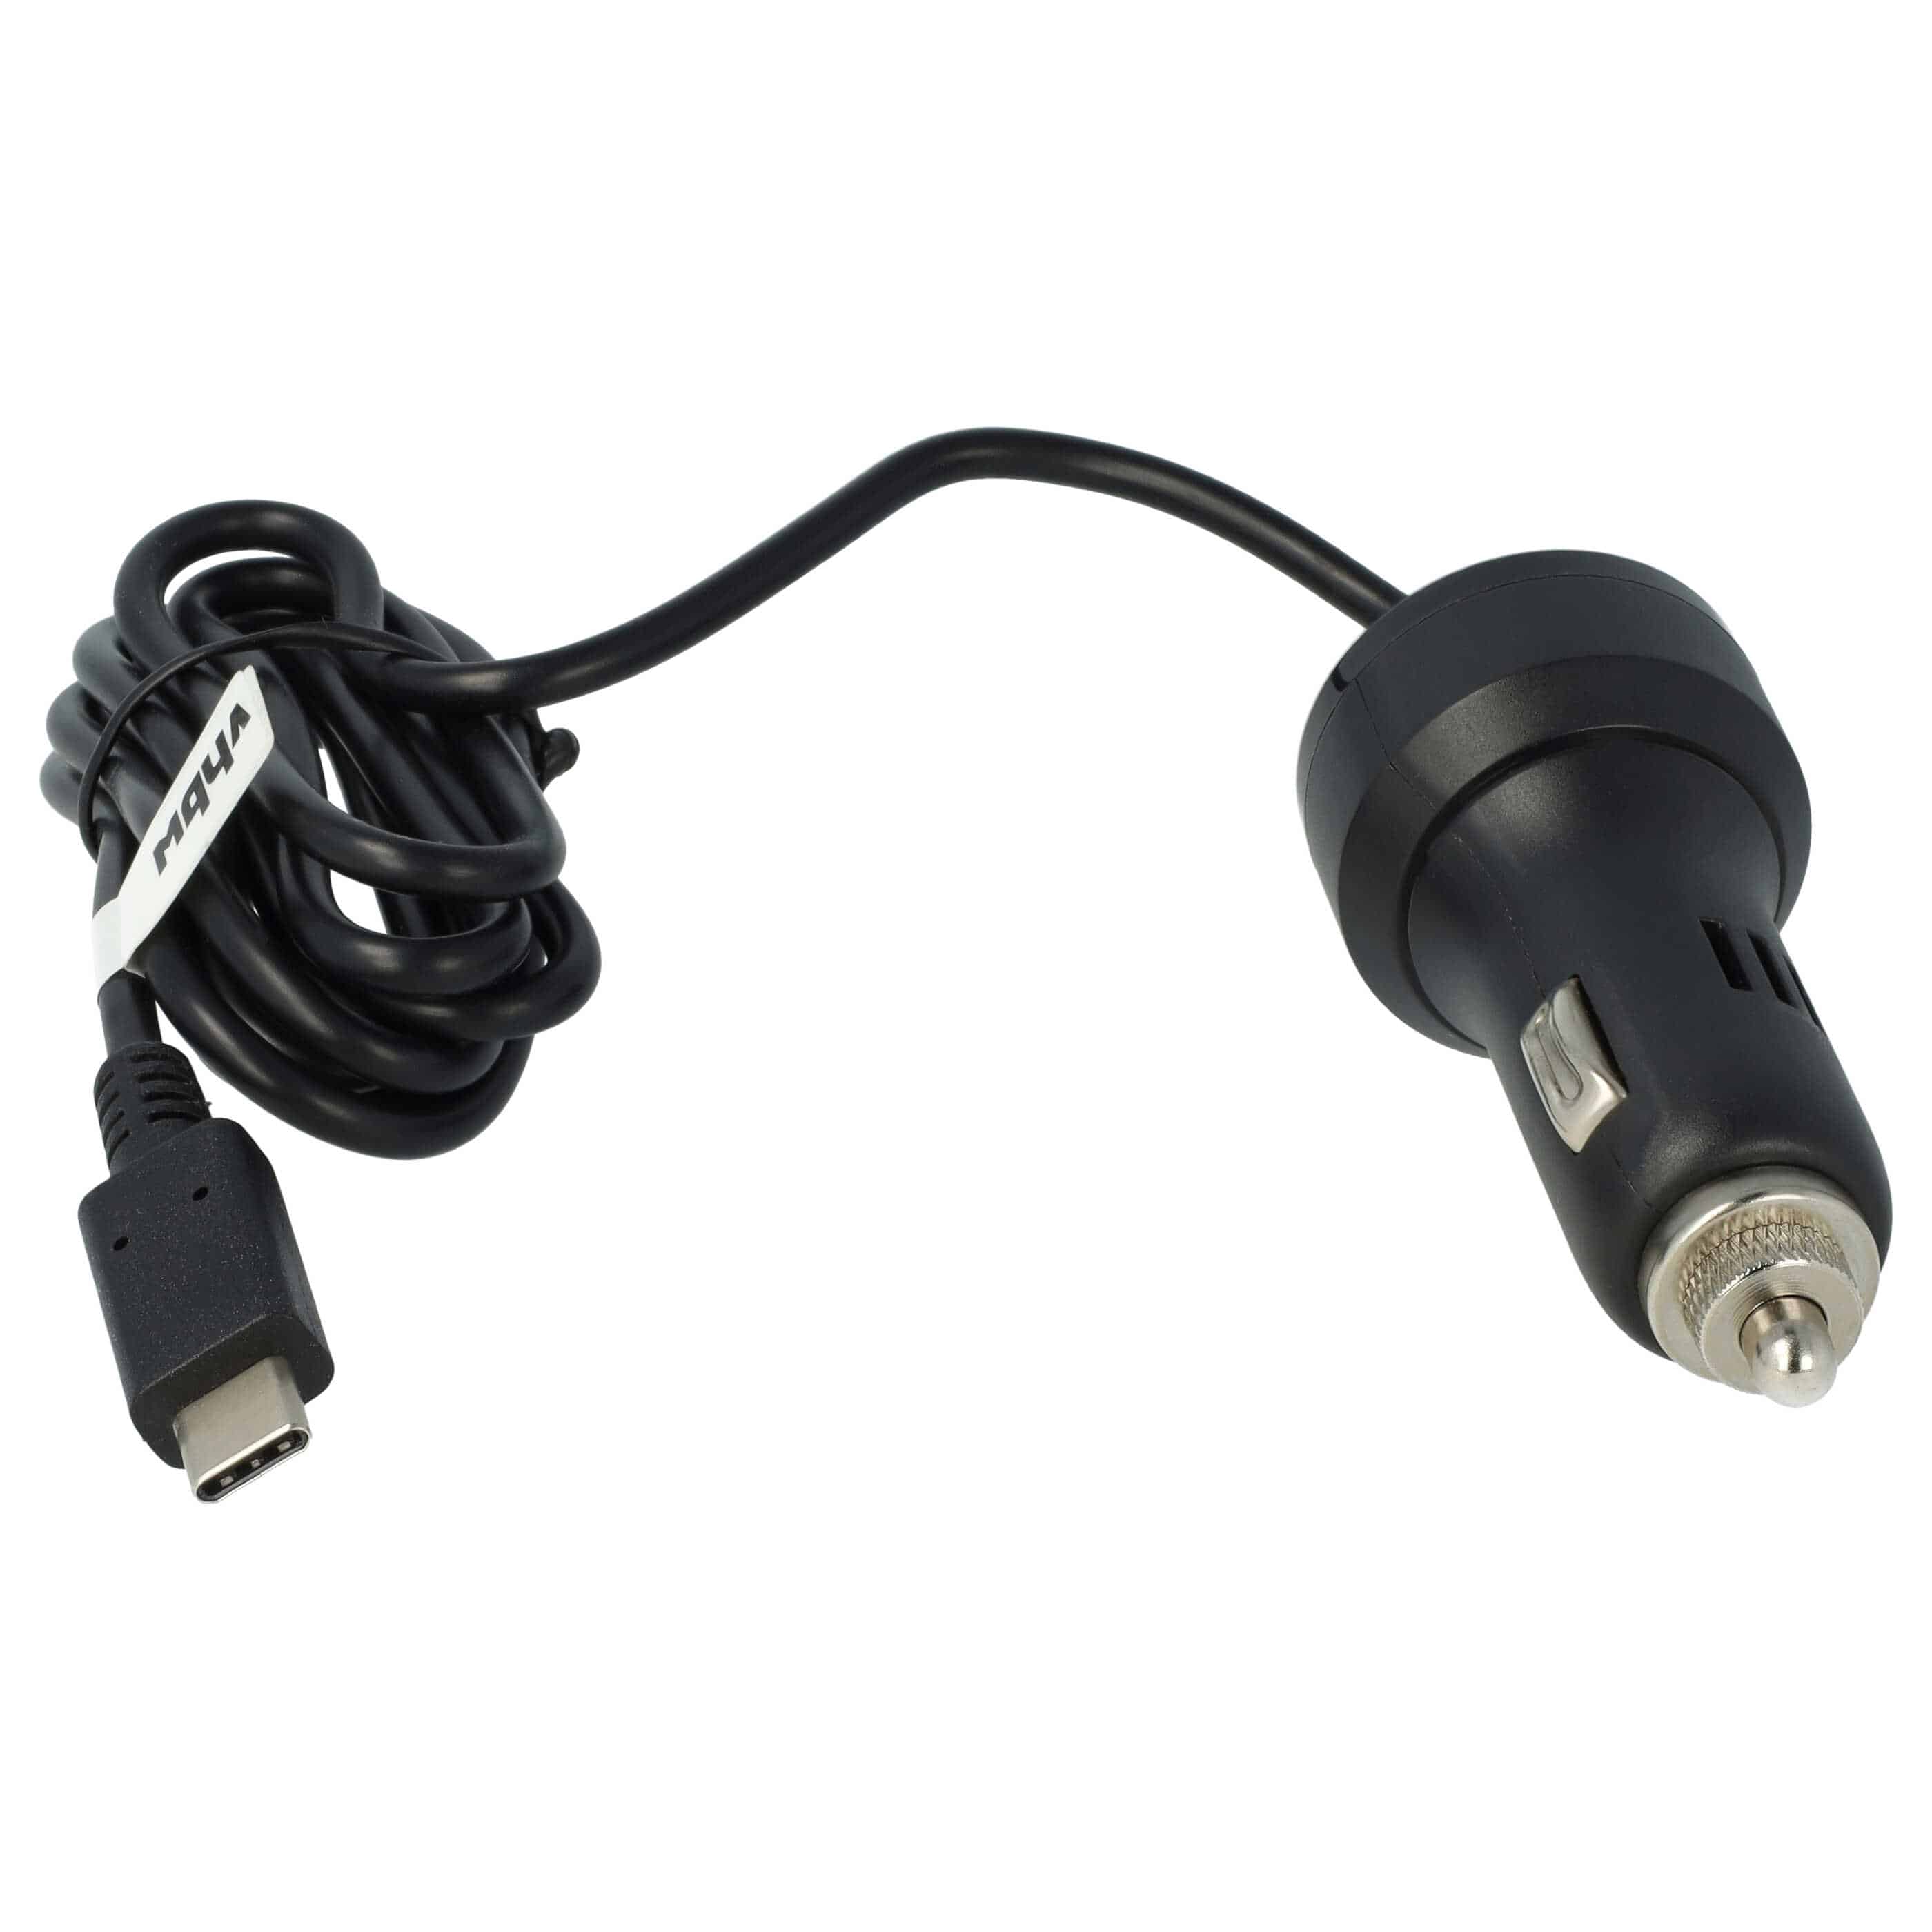 Cargador coche USB C 2,4 A para smartphone, GPS Huawei, etc. - Cable de carga